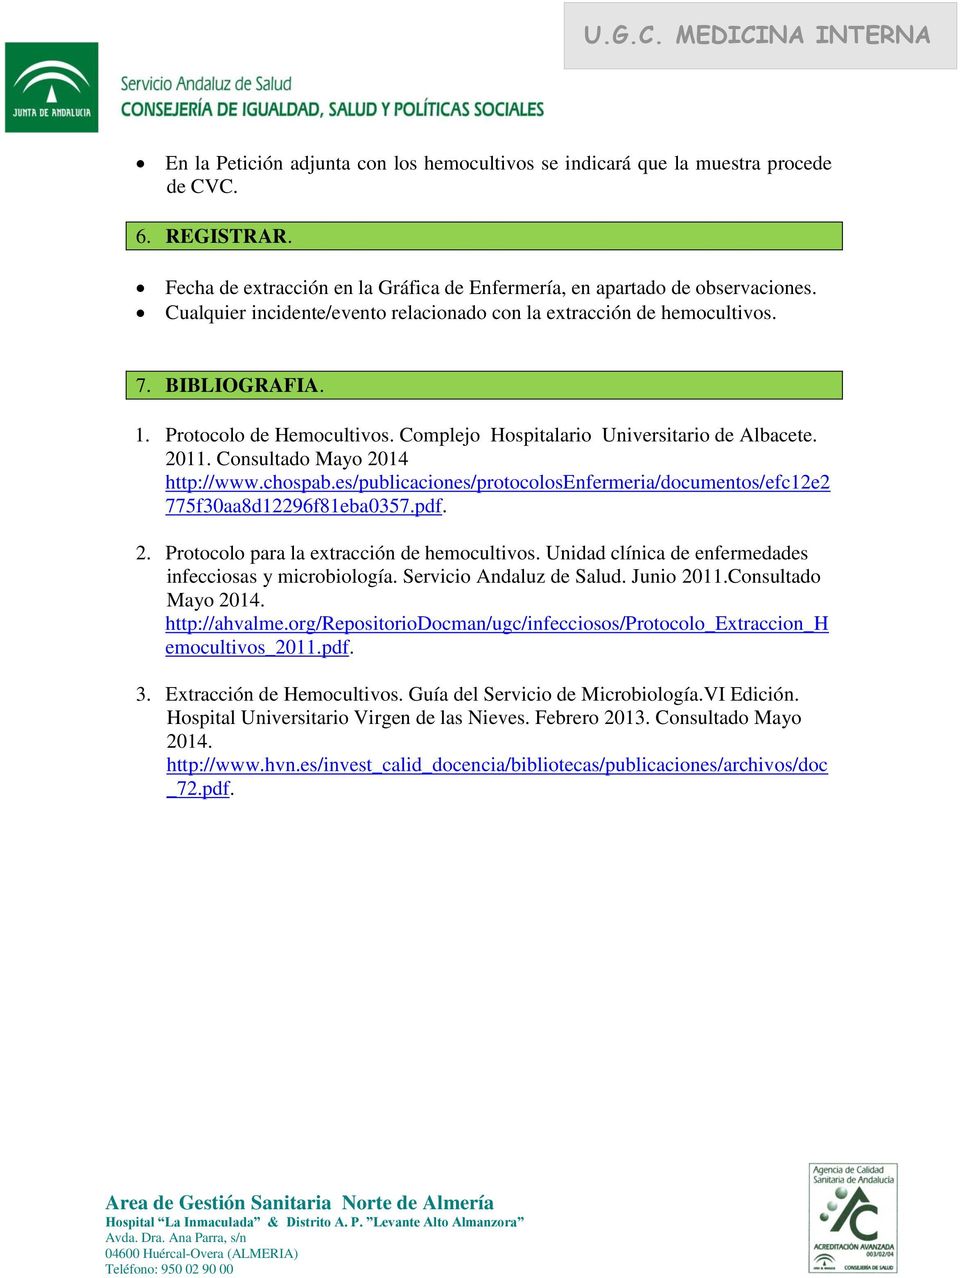 Consultado Mayo 2014 http://www.chospab.es/publicaciones/protocolosenfermeria/documentos/efc12e2 775f30aa8d12296f81eba0357.pdf. 2. Protocolo para la extracción de hemocultivos.